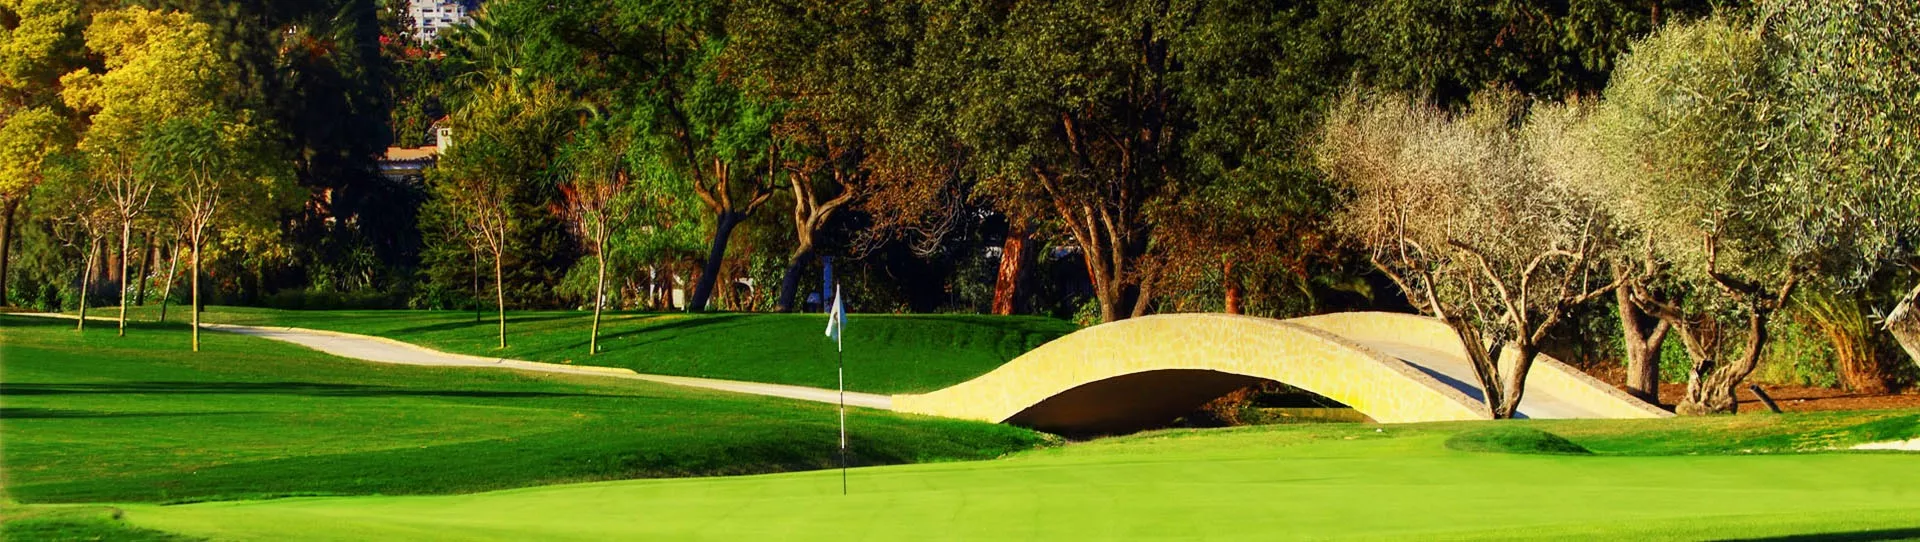 Spain golf courses - Real Club de Golf Las Brisas - Photo 3